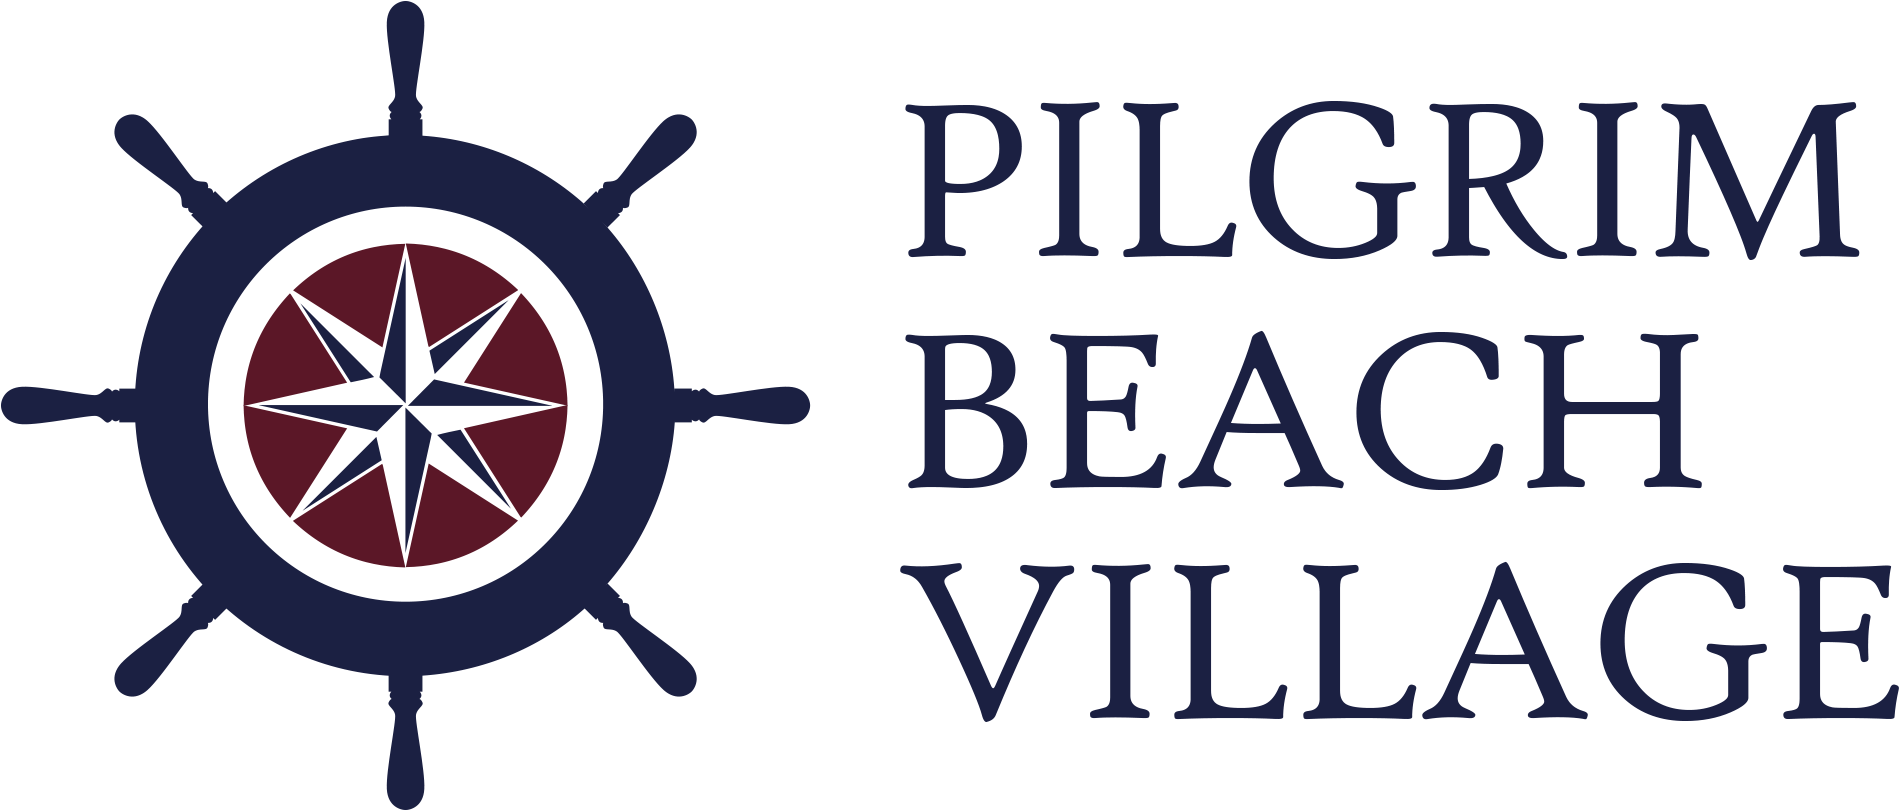 Cabin Clipart Pilgrim House - Logos For Boat Restaurants (1920x824)